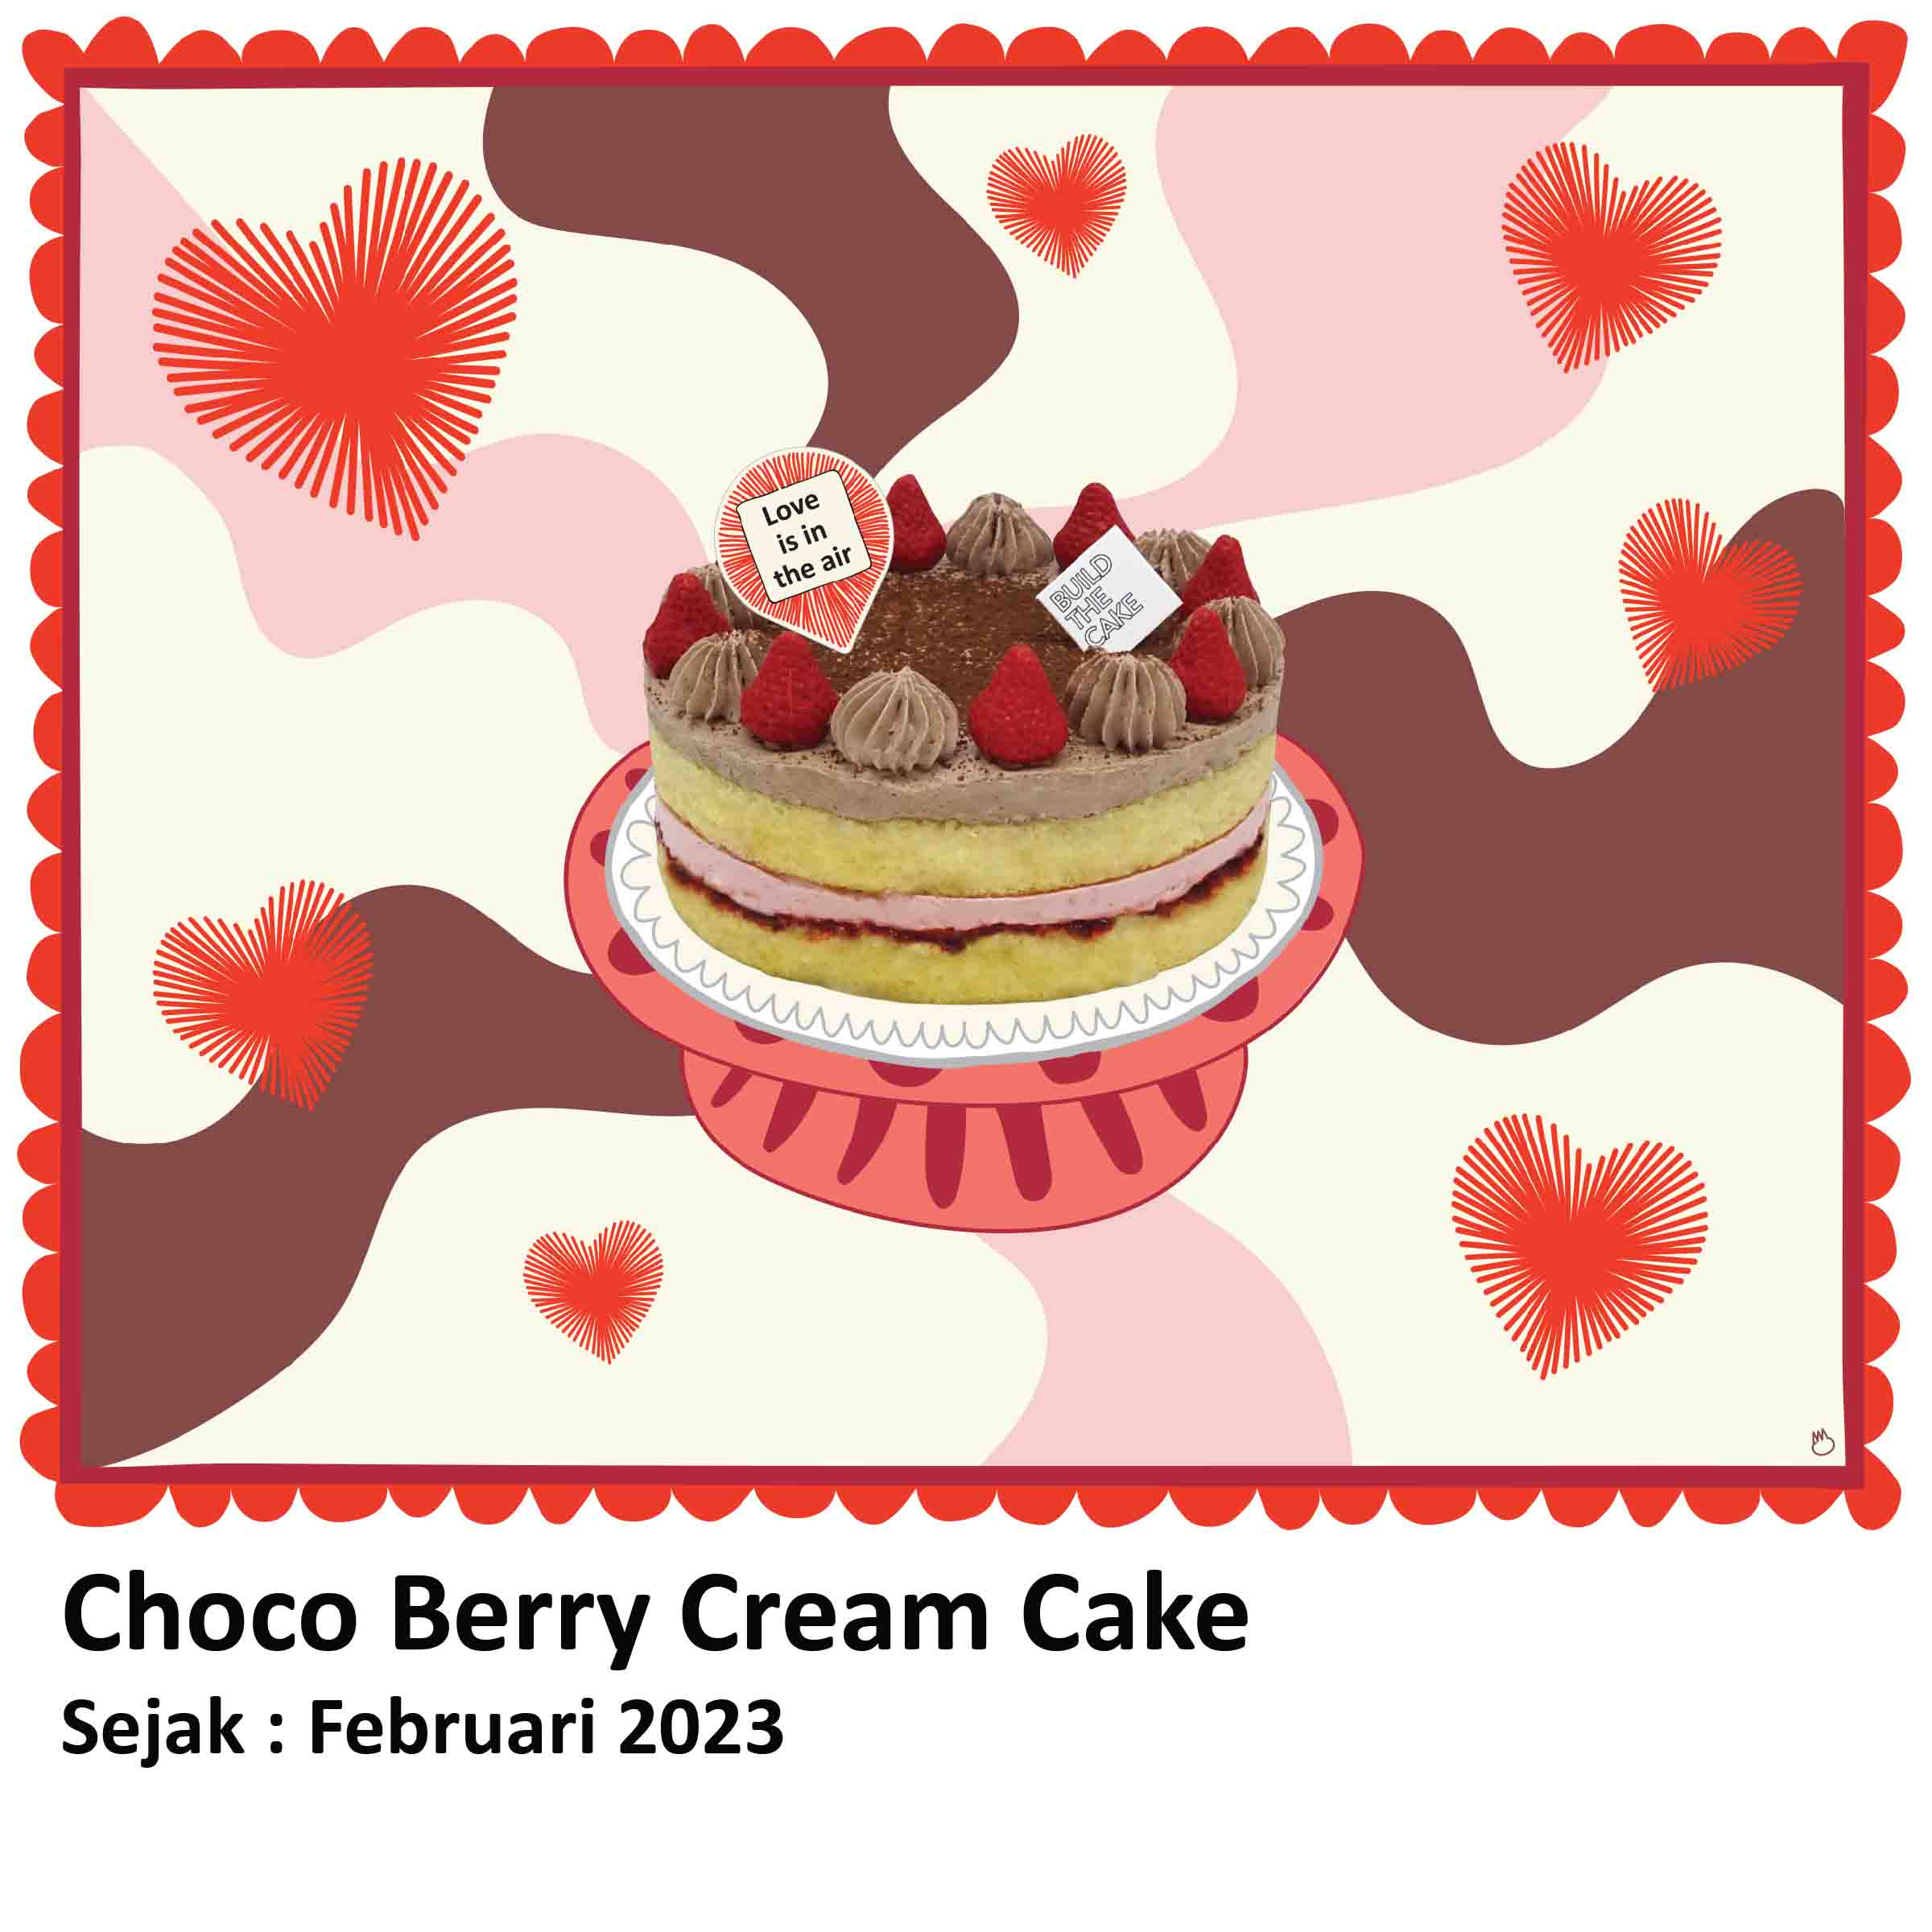 Choco Berry Cream Cake